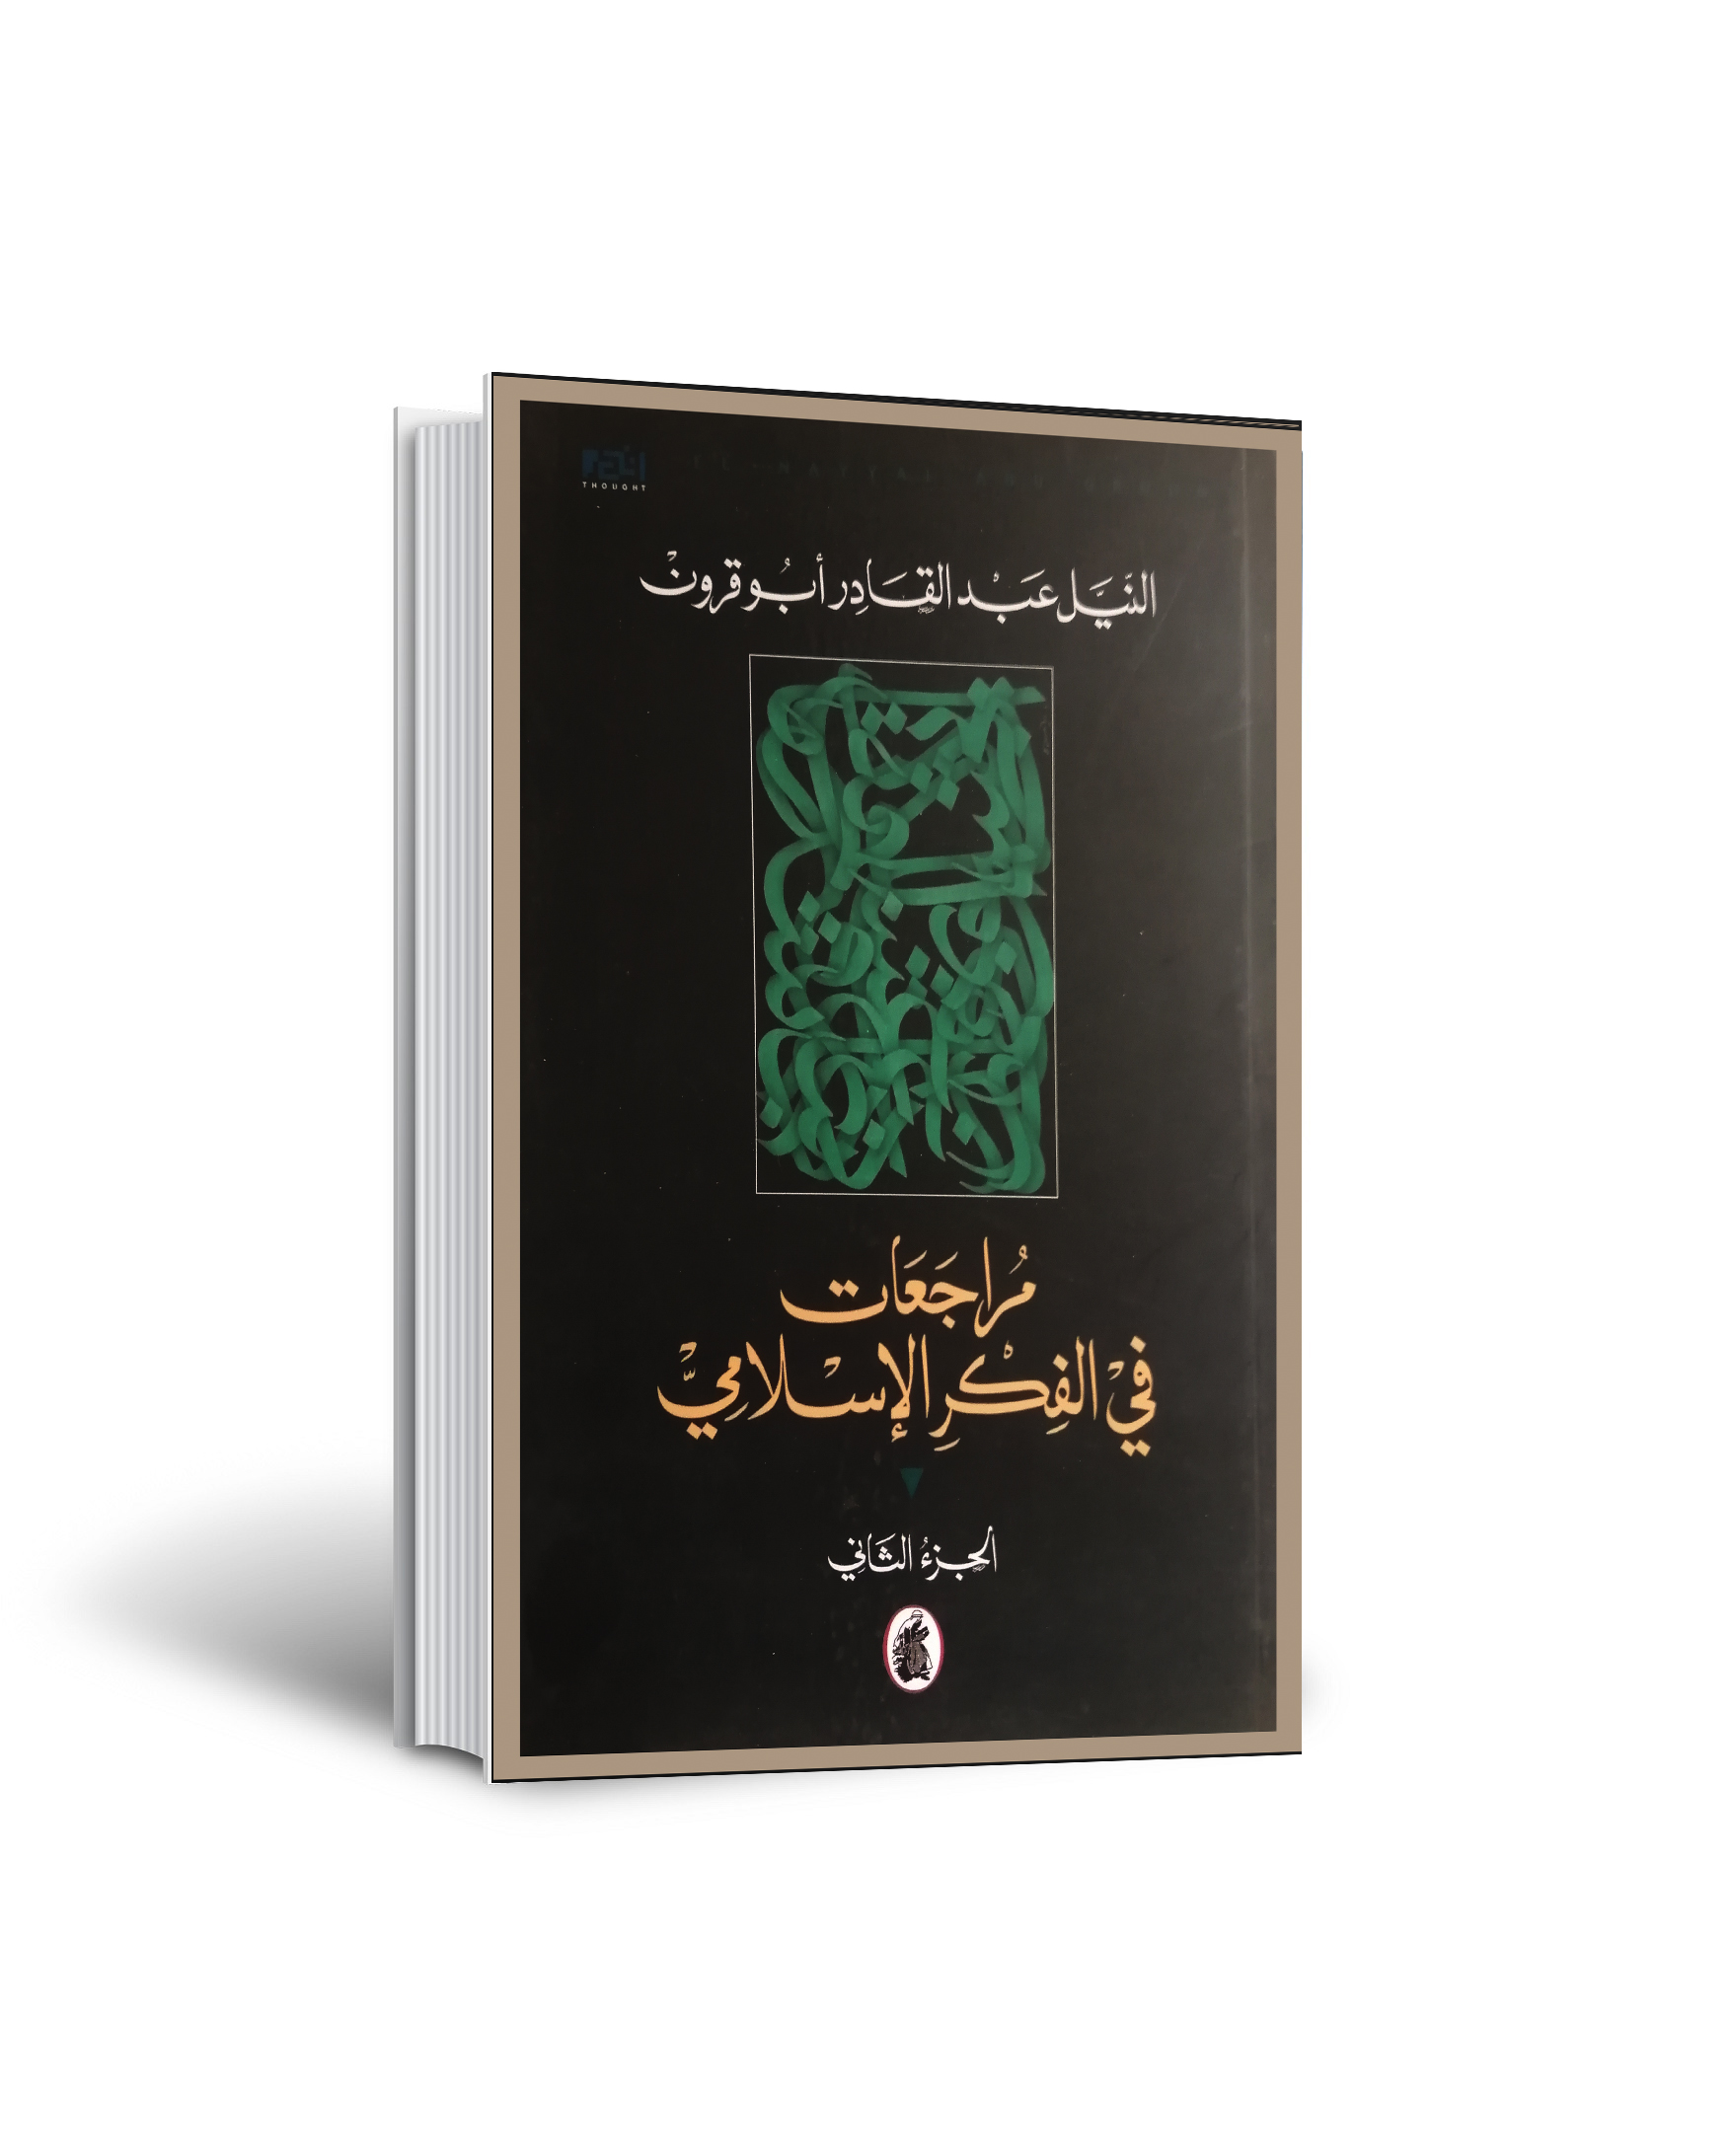 مراجعات في الفكر الاسلامي-الجزز الثاني